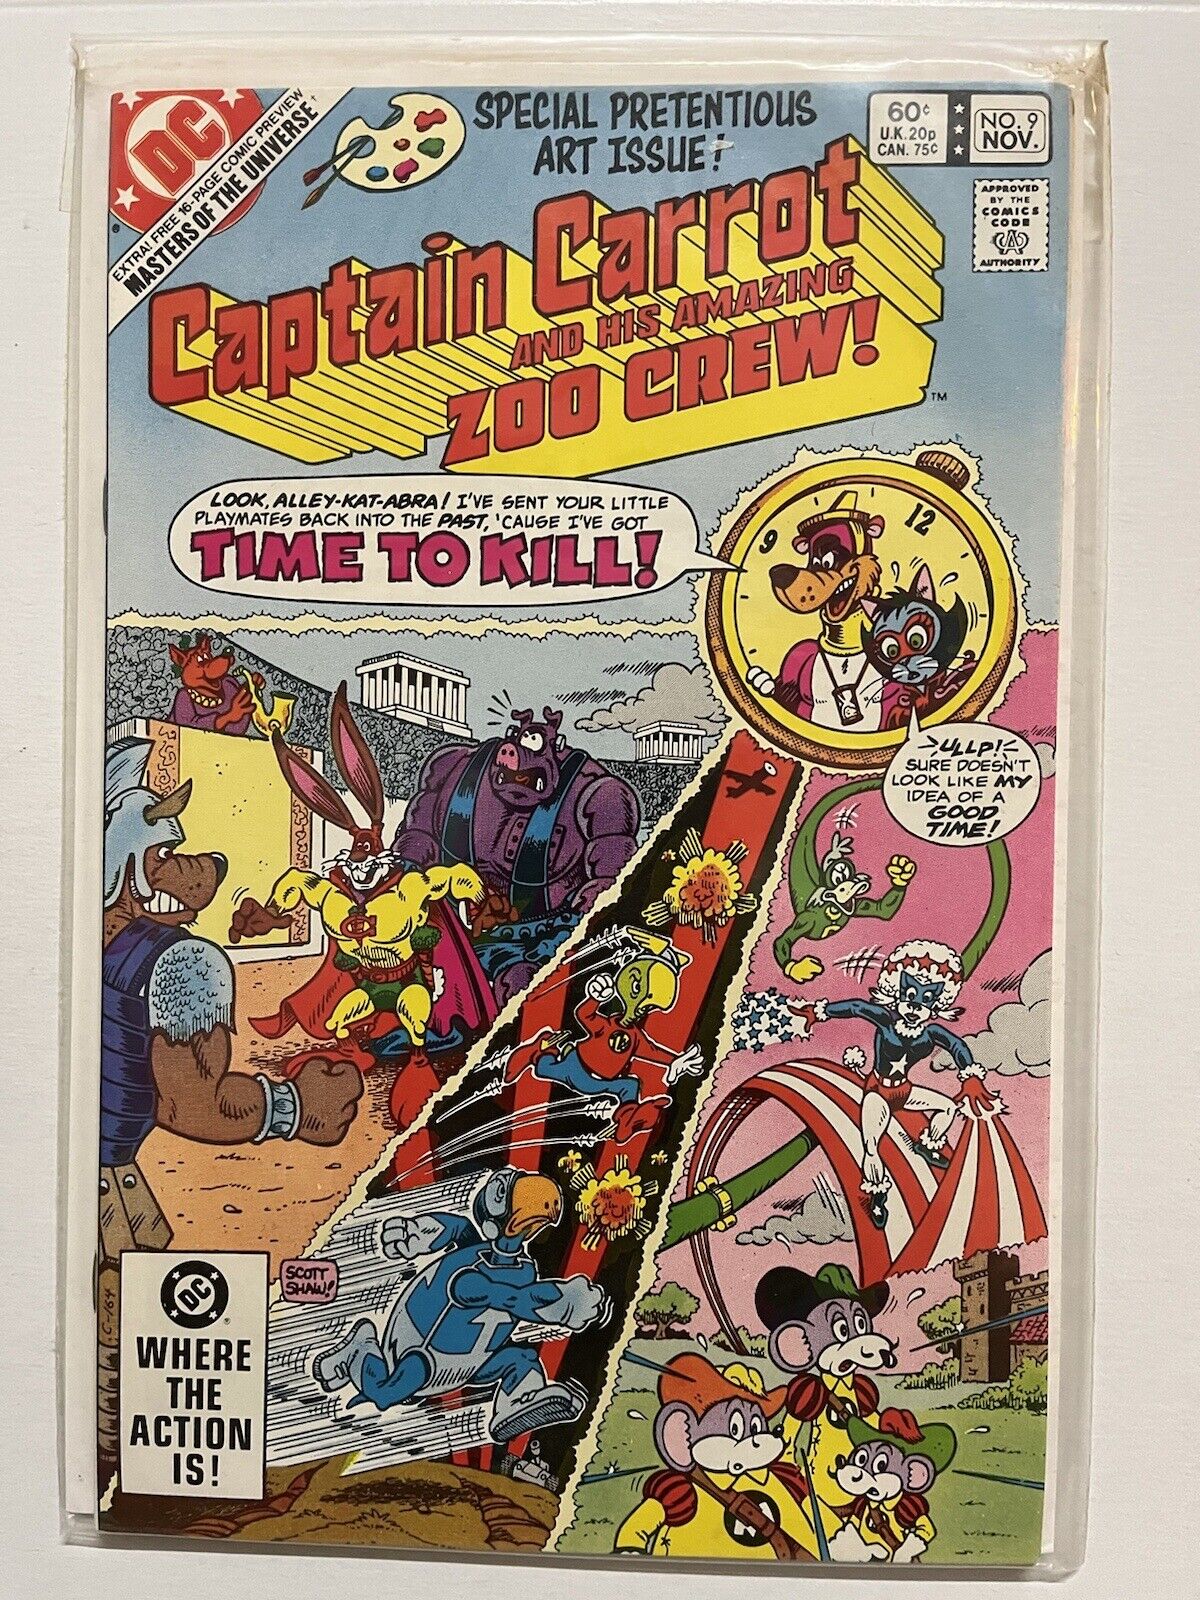 Captain Carrot and His Amazing Zoo Crew #9 1982 DC Comics